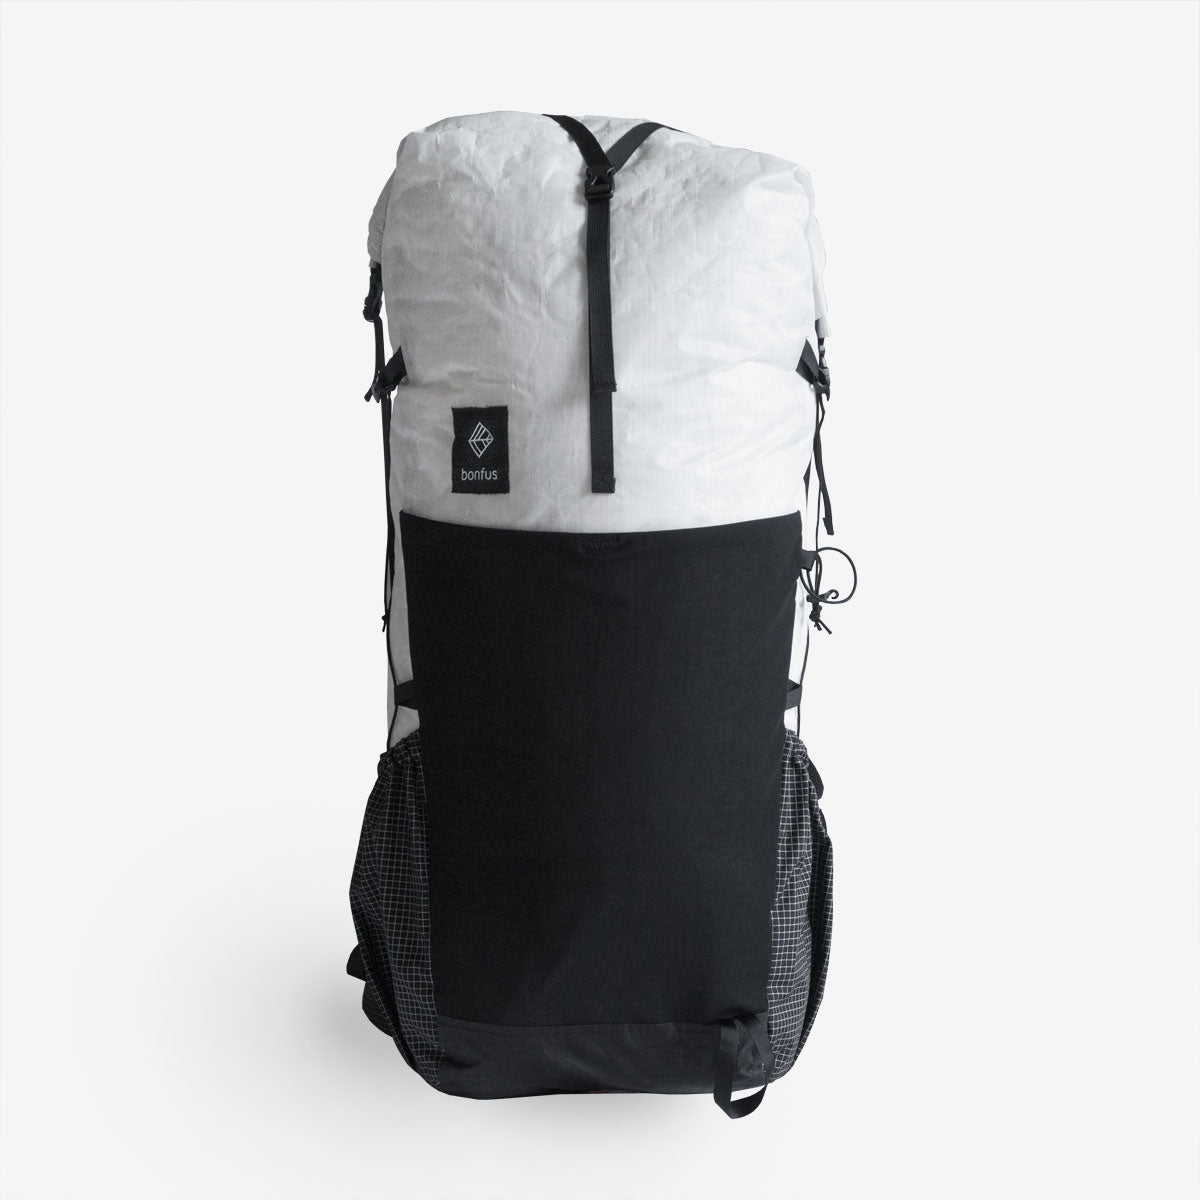 Bonfus - Framus 58L Backpack